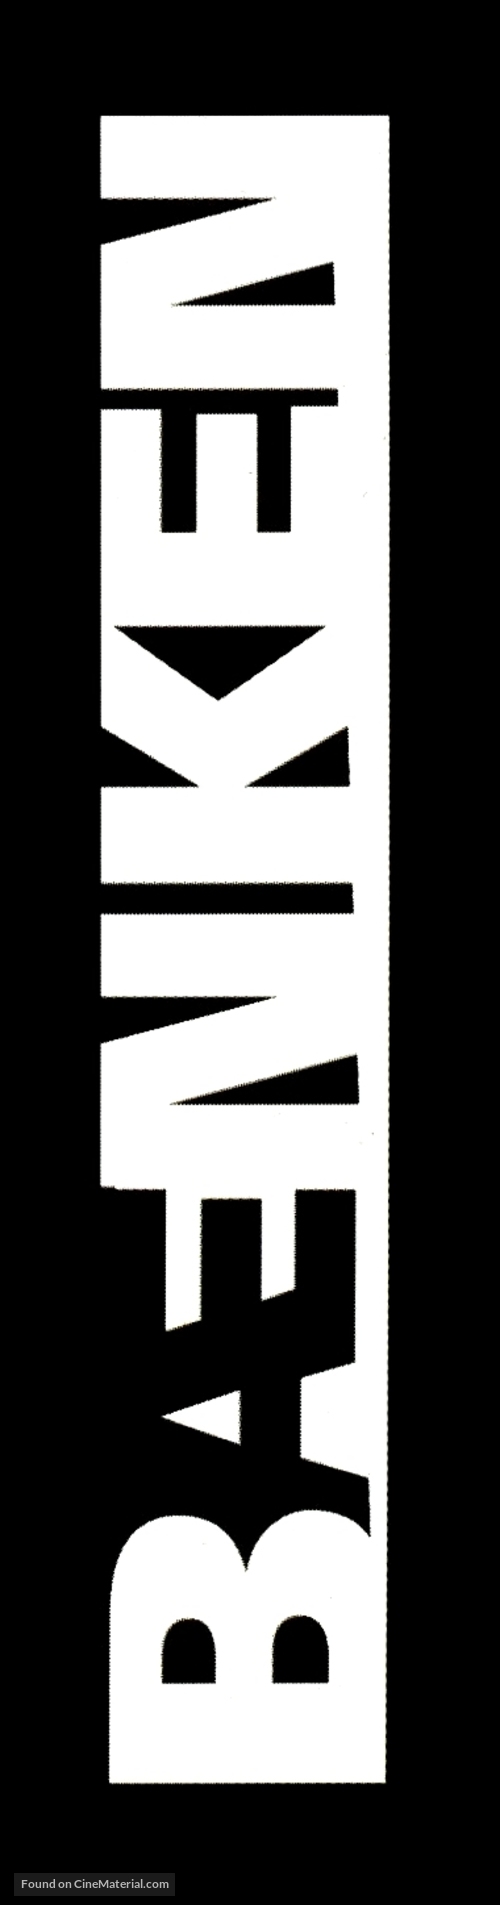 B&aelig;nken - Danish Logo